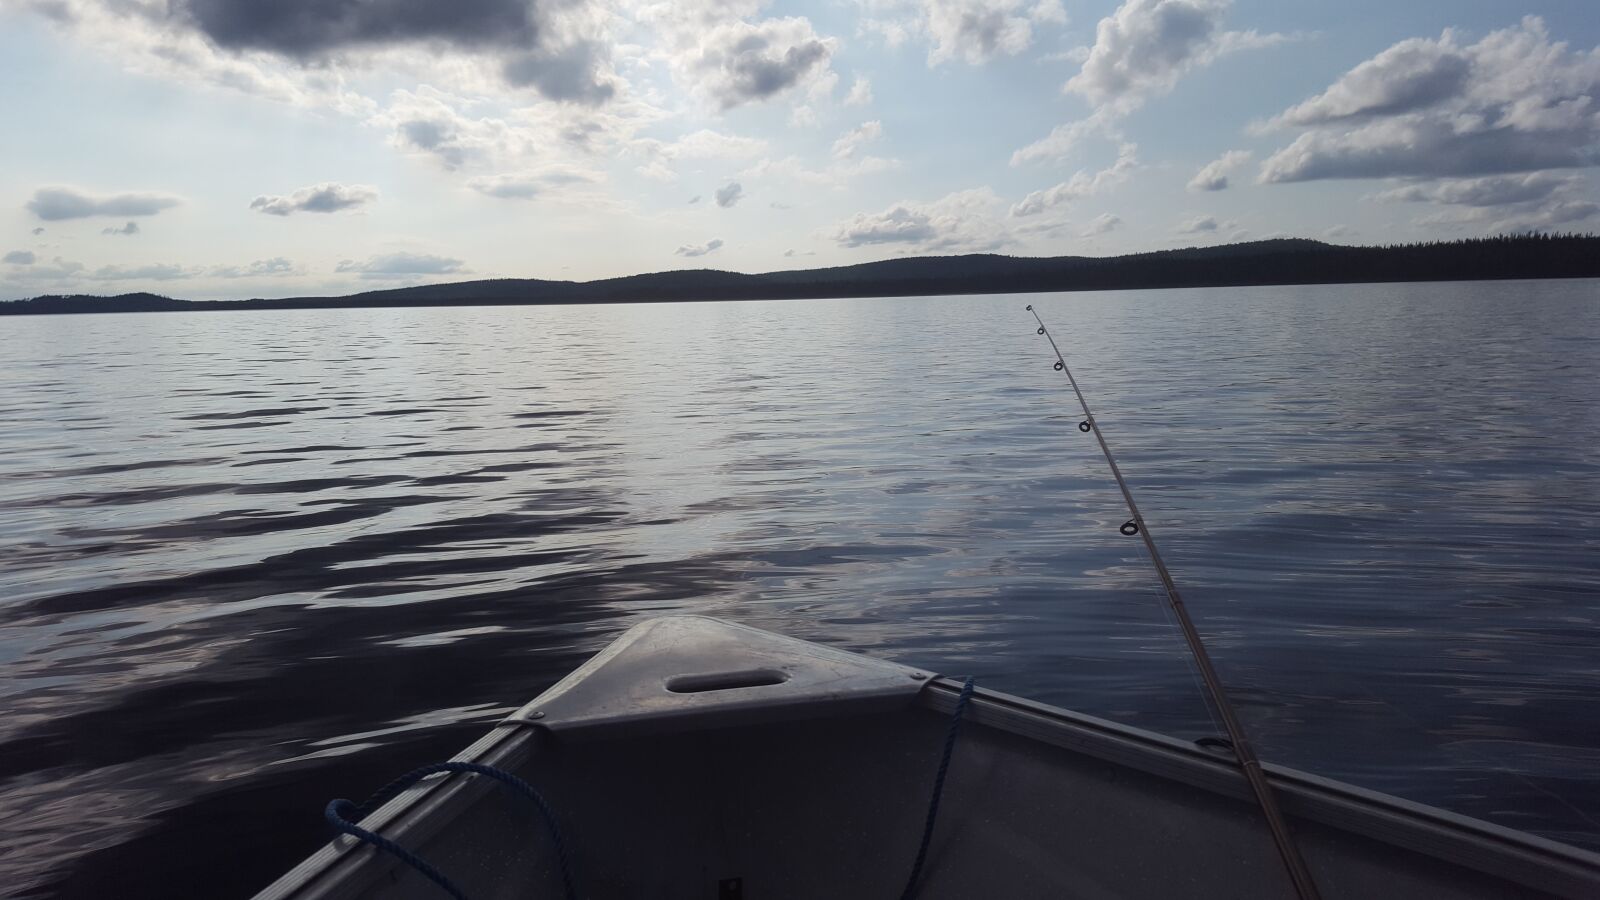 Samsung Galaxy S6 sample photo. Lake, boat, nature photography